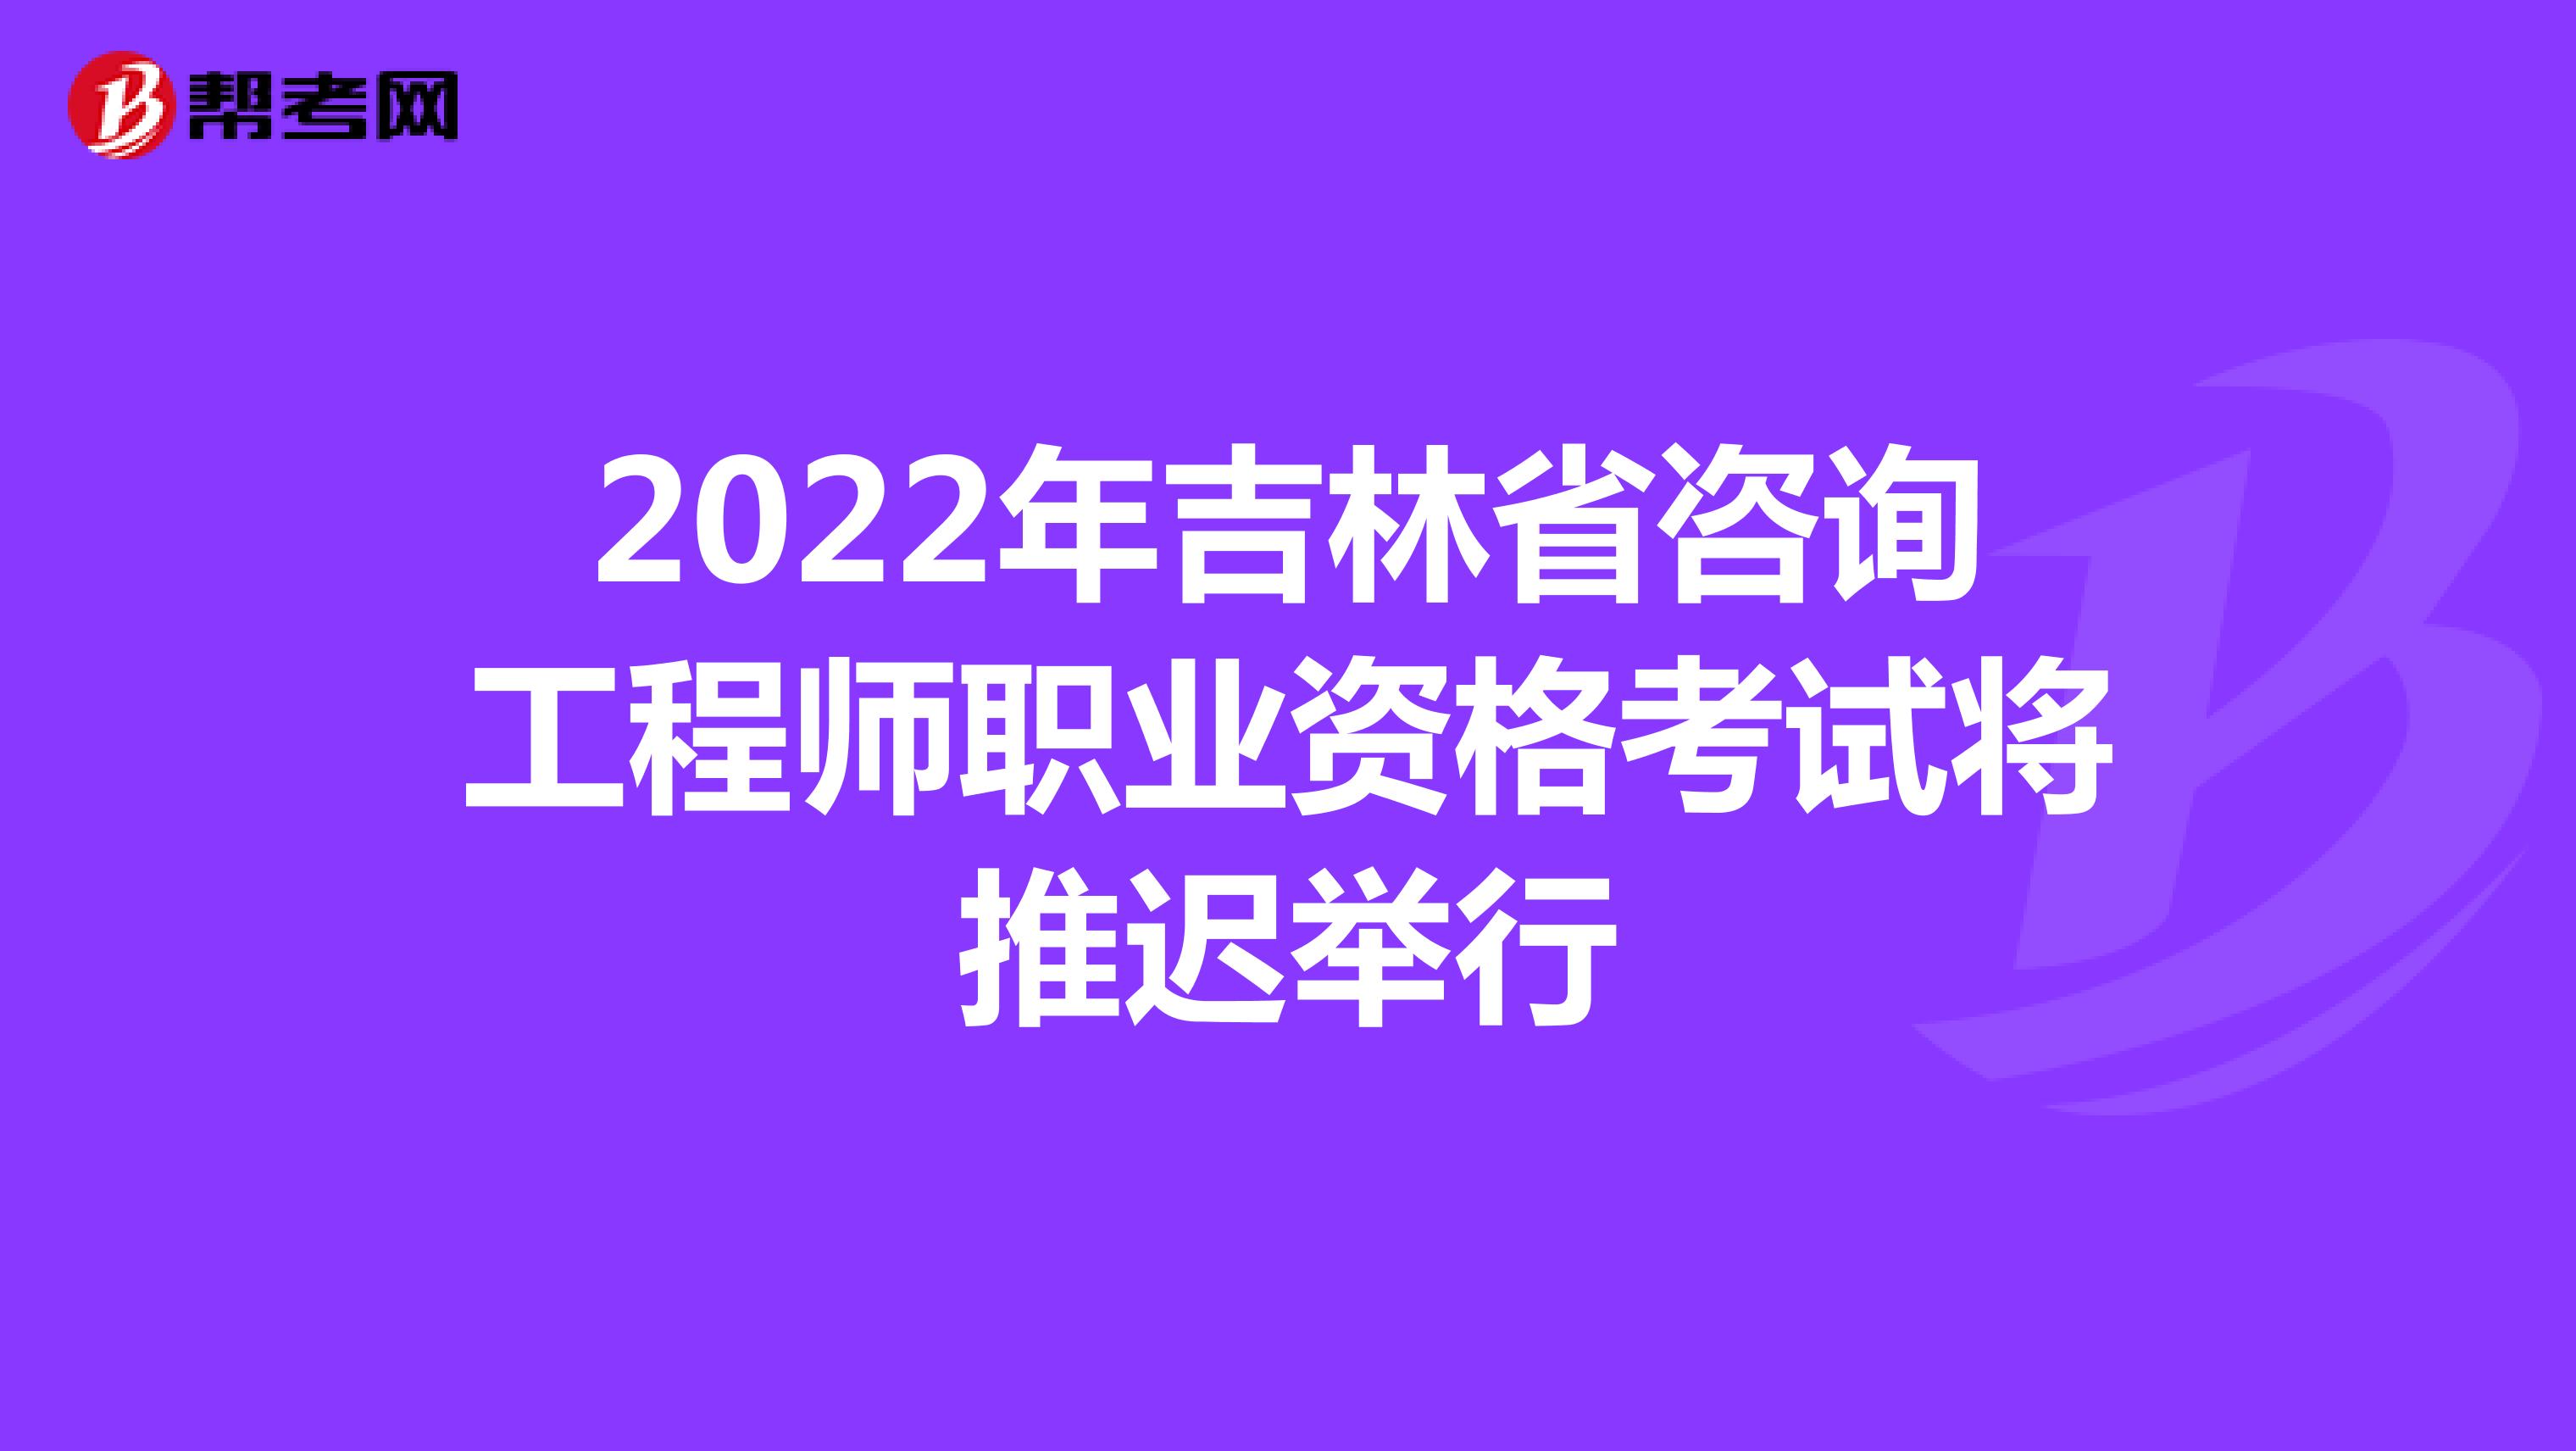 2022年吉林省咨询工程师职业资格考试将推迟举行